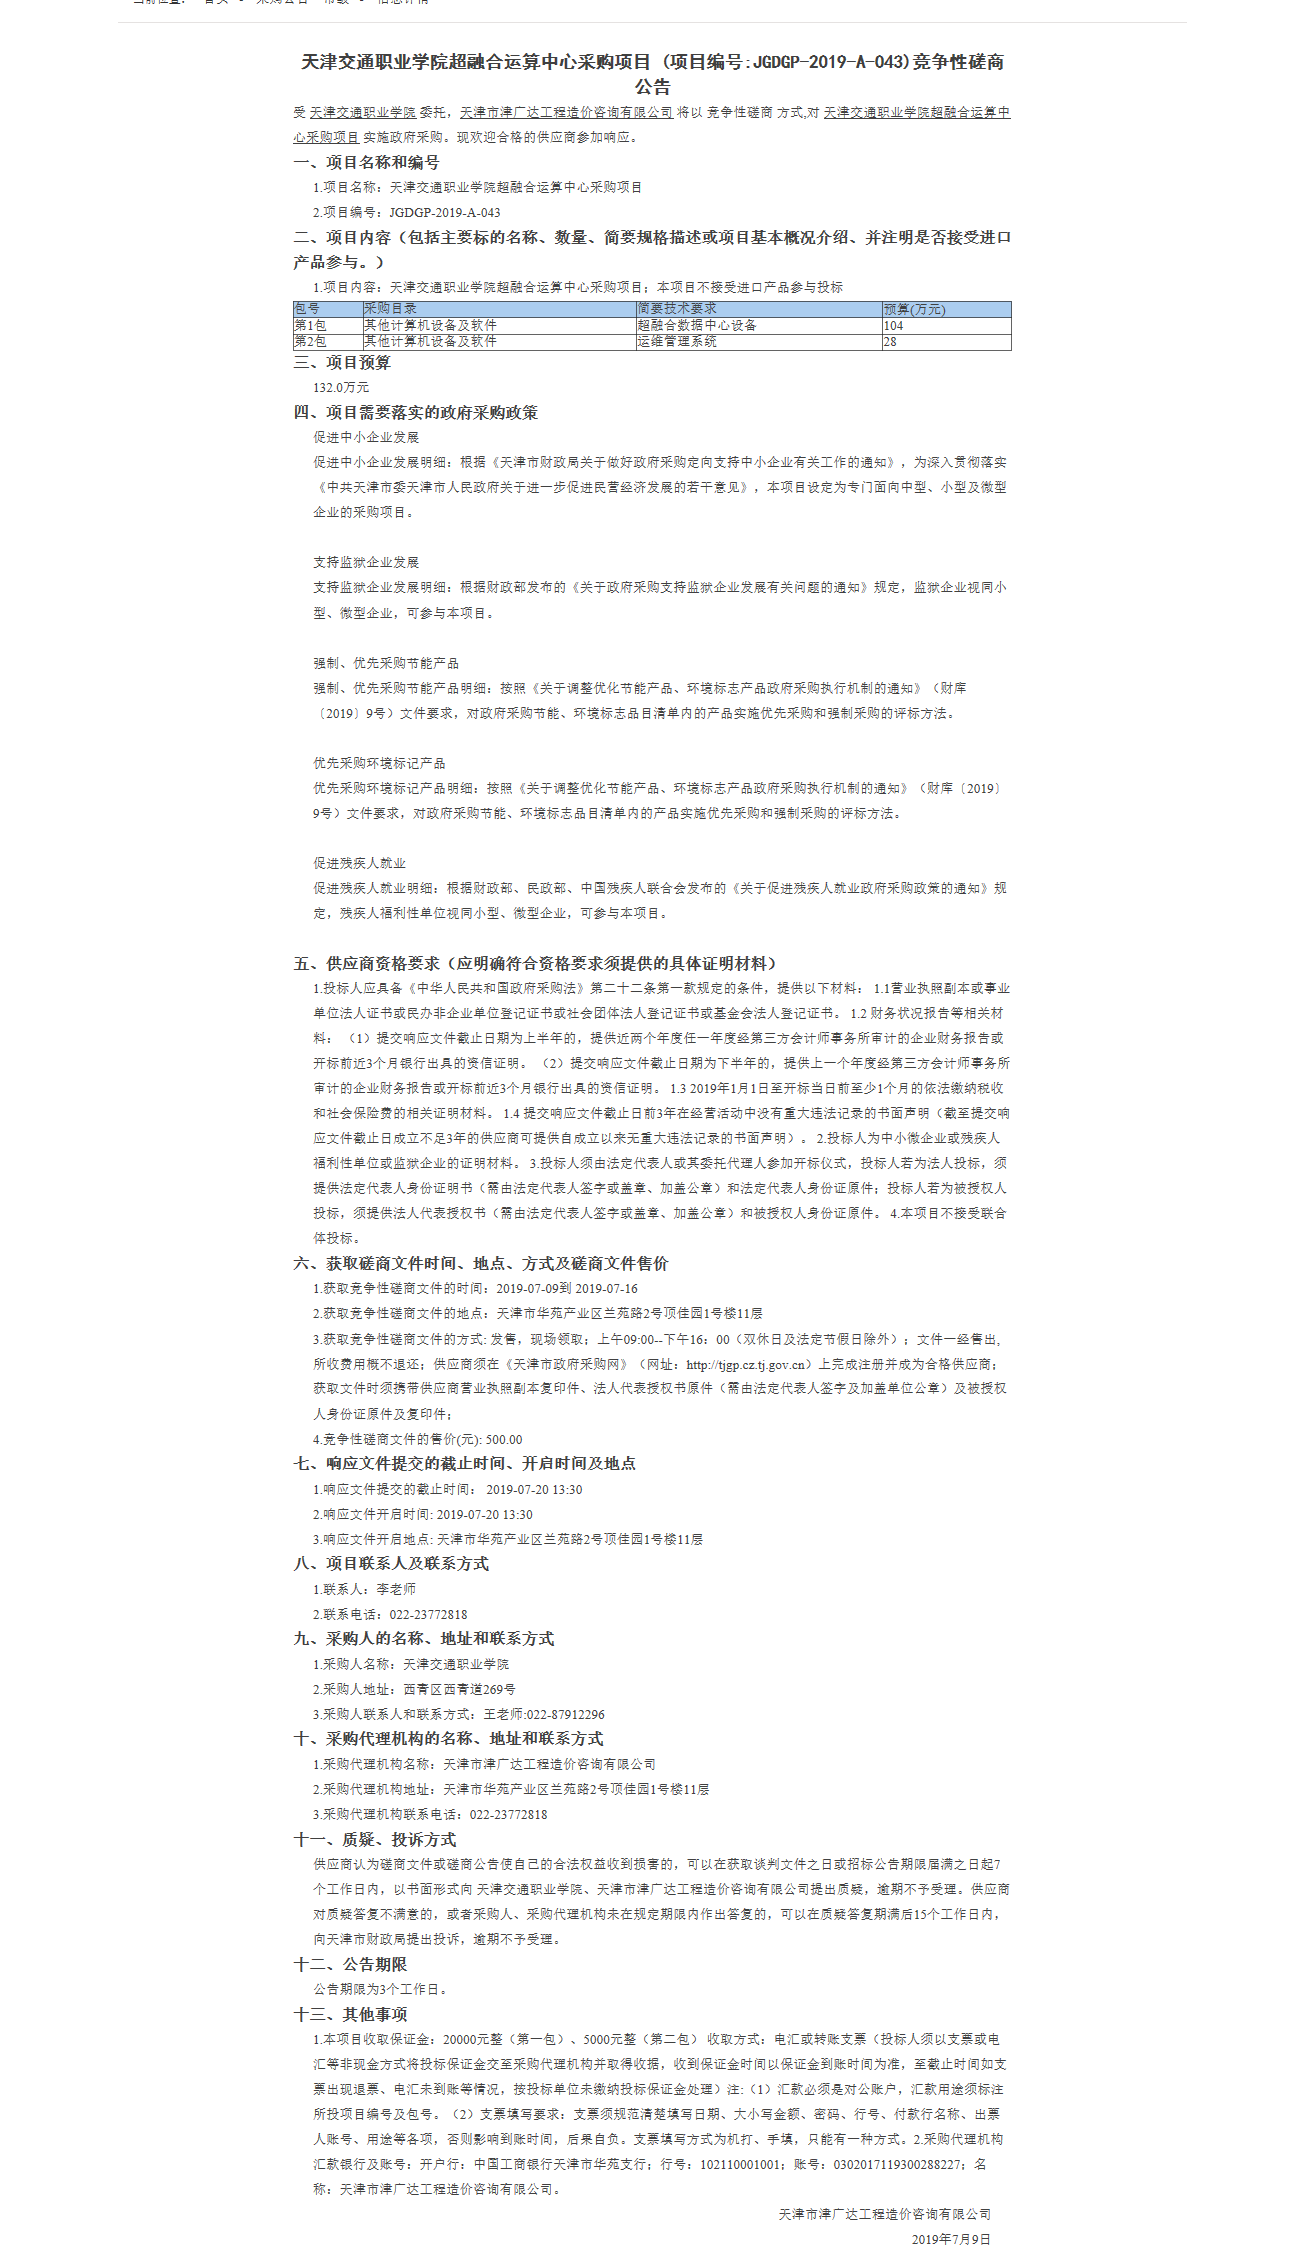 天津交通职业学院超融合运算中心采购项目(图1)